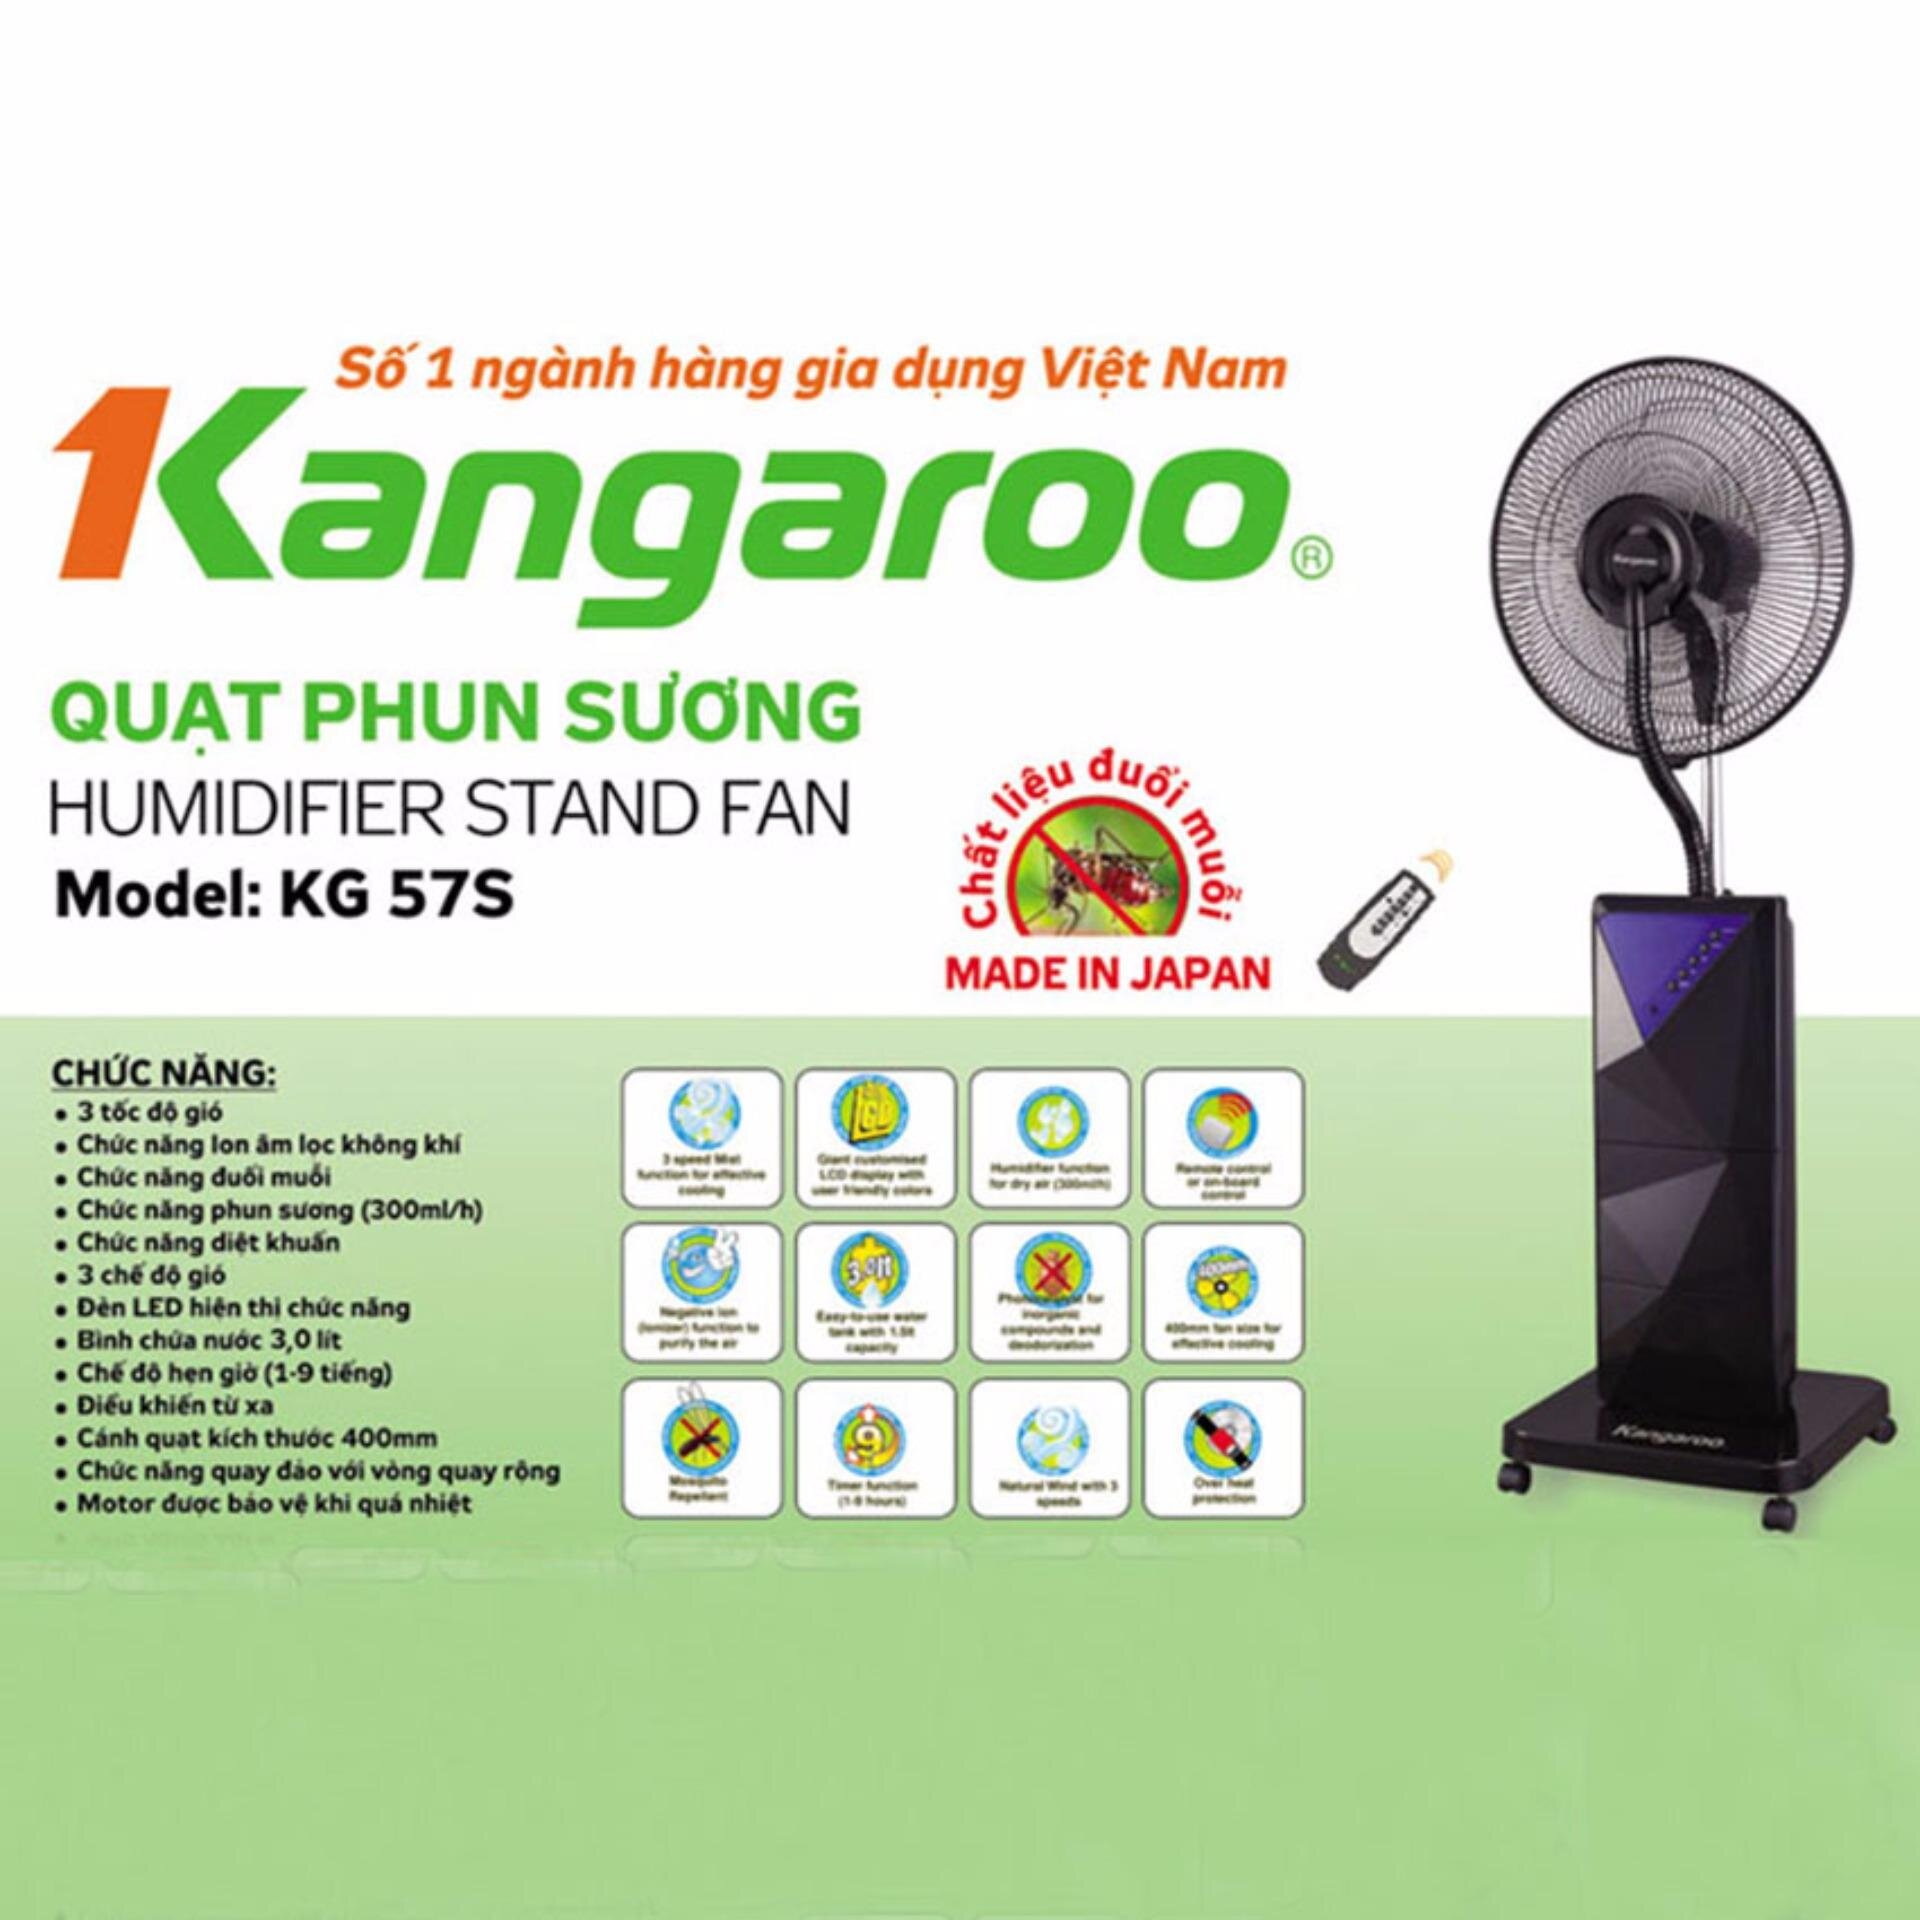 Thương hiệu điện lạnh, điện máy hàng đầu Việt Nam